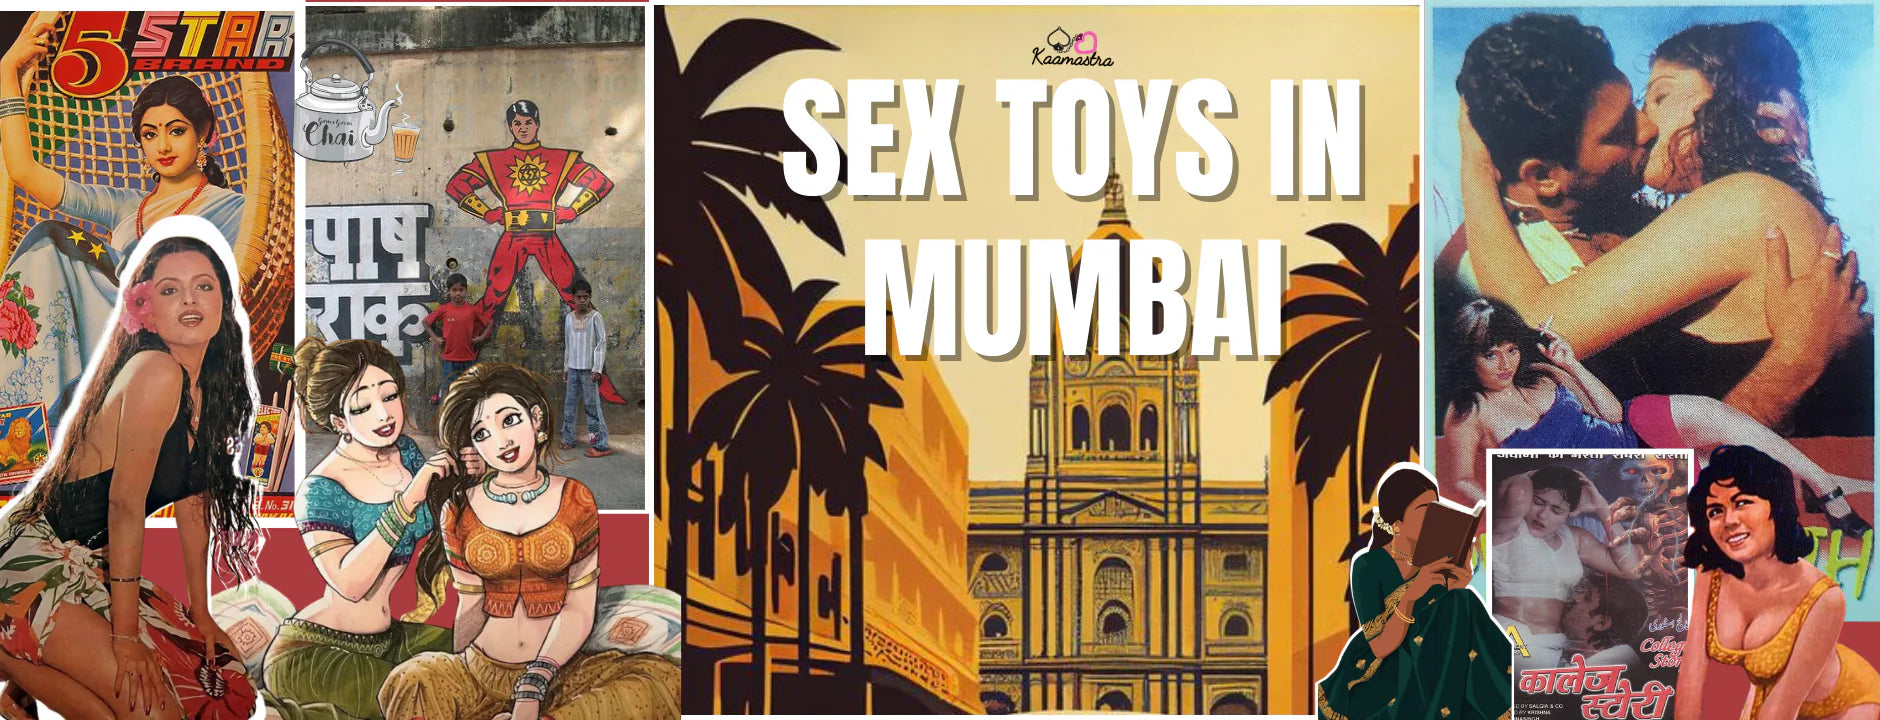 Sex Toys in Mumbai